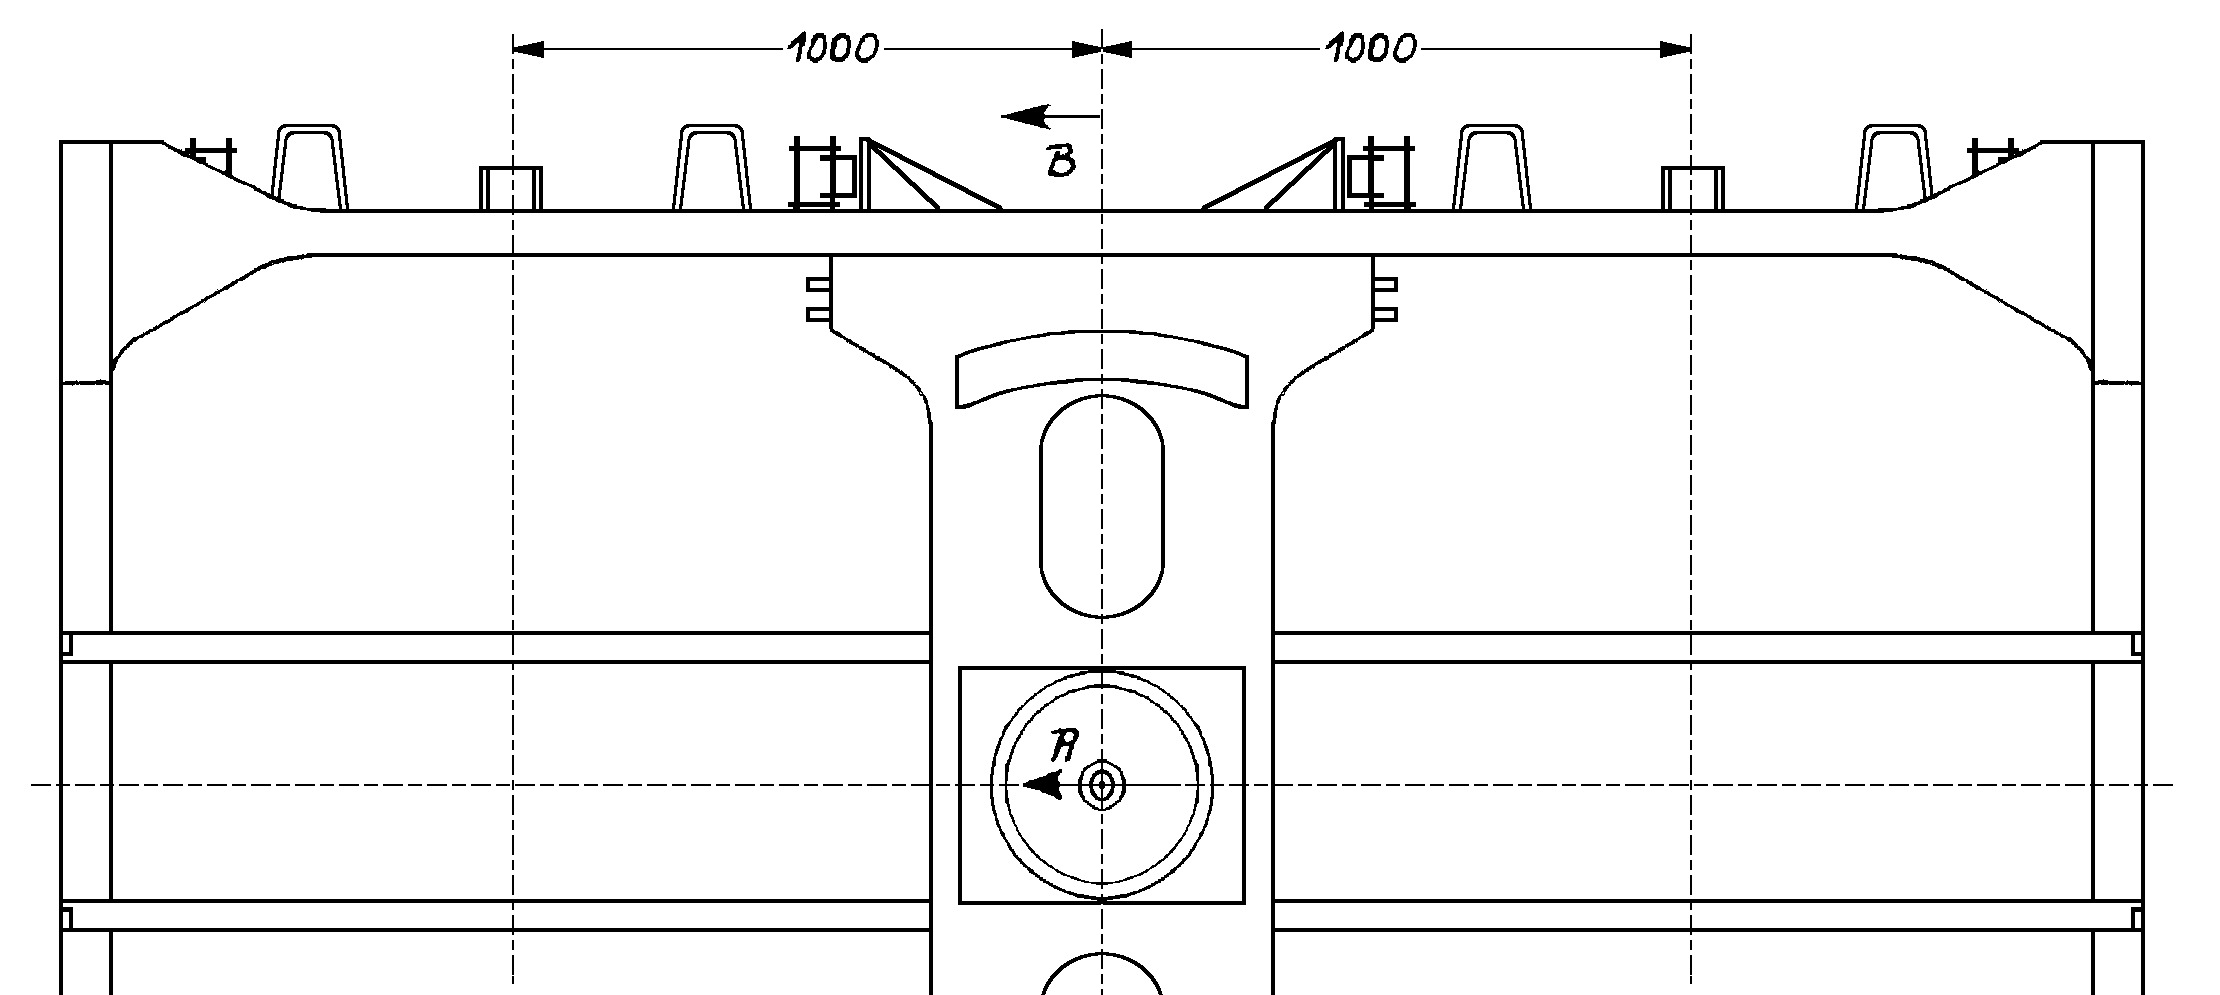 Drehgestell nach Zeichnung D 643 a (Draufsicht)